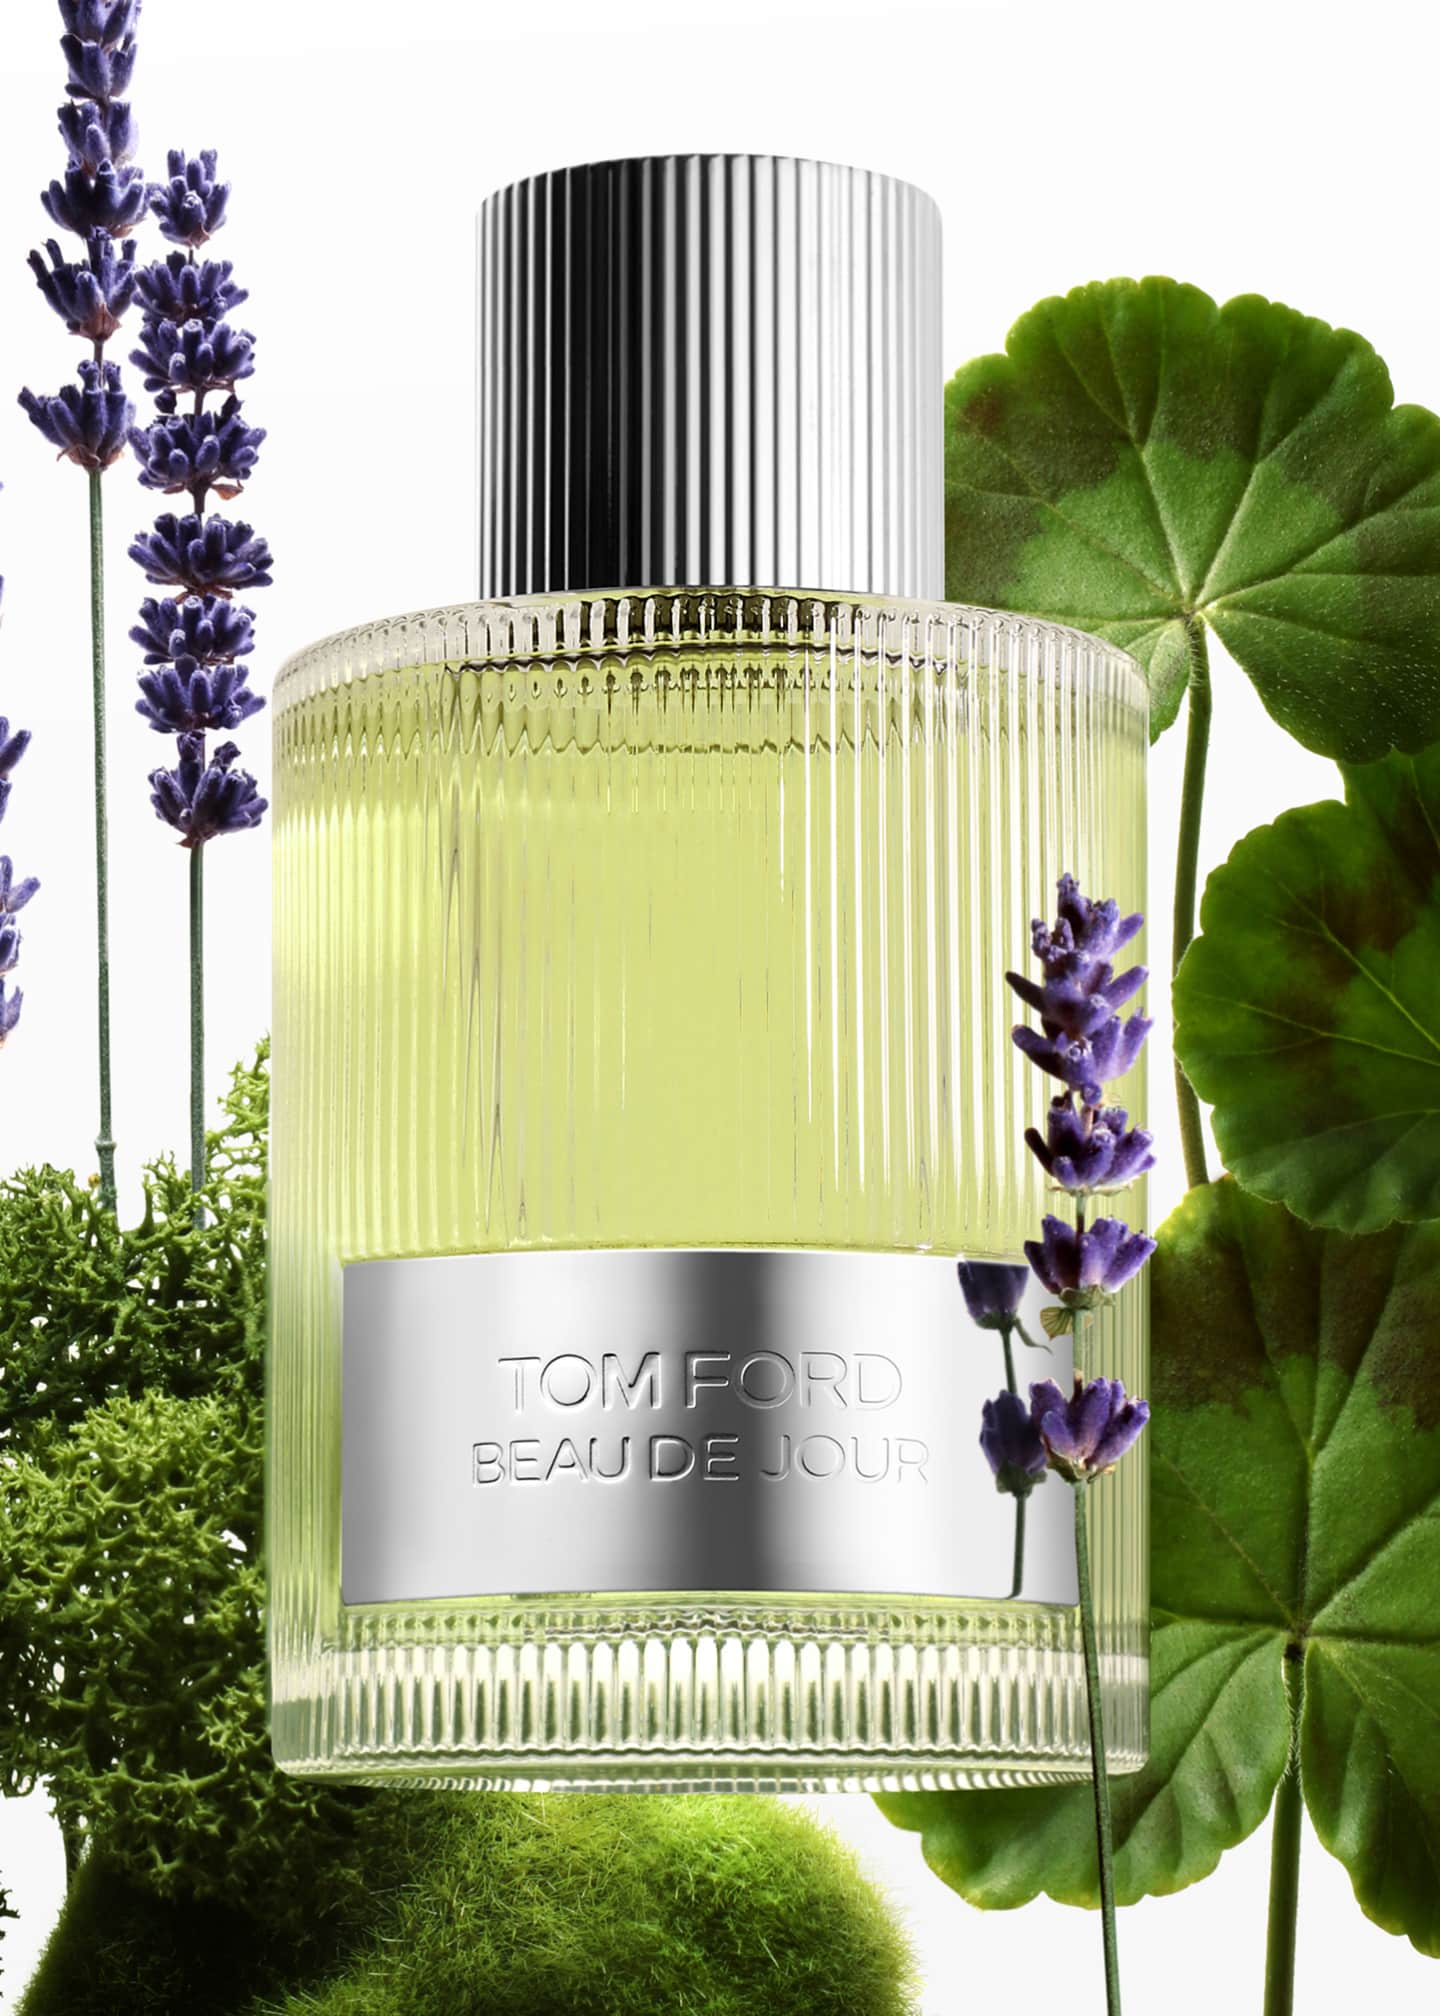 TOM FORD Beau de Jour Eau de Parfum Fragrance, 3.4 oz Image 2 of 2